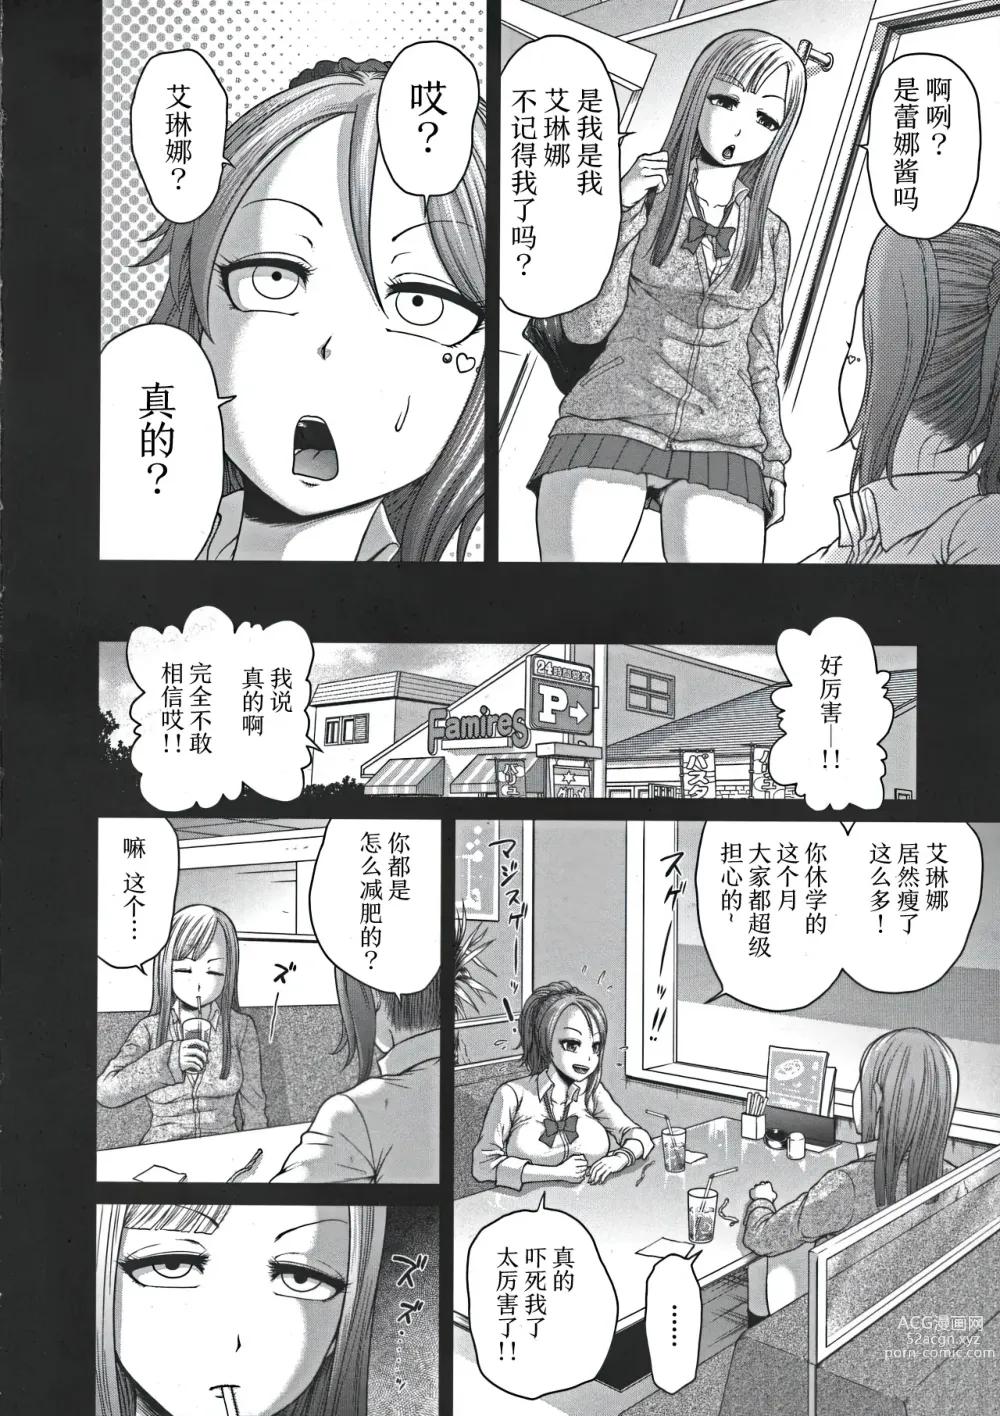 Page 4 of manga Hentai Tamamayu Club